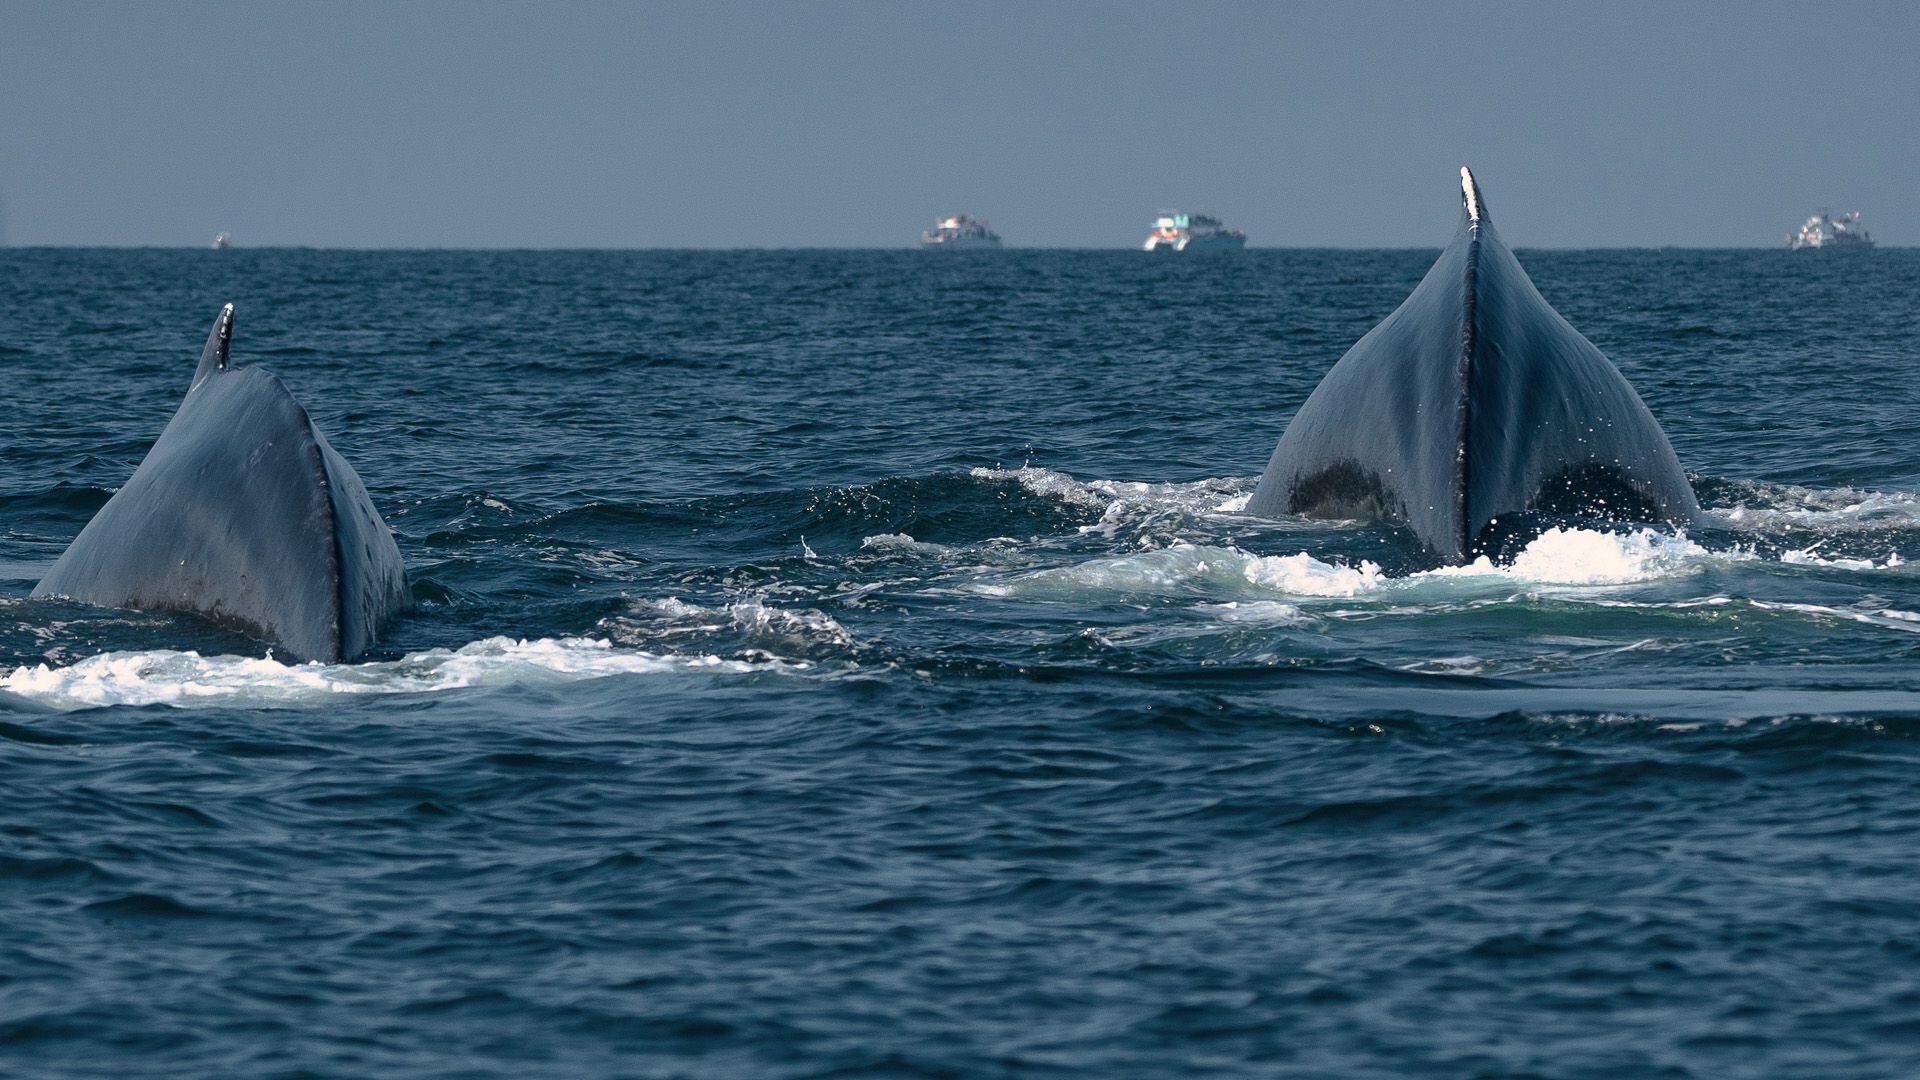 Una pareja de ballenas jorobadas nada en la Bahía de Banderas, donde el turismo ha desencadenado el aumento de colisiones entre ballenas y embarcaciones.